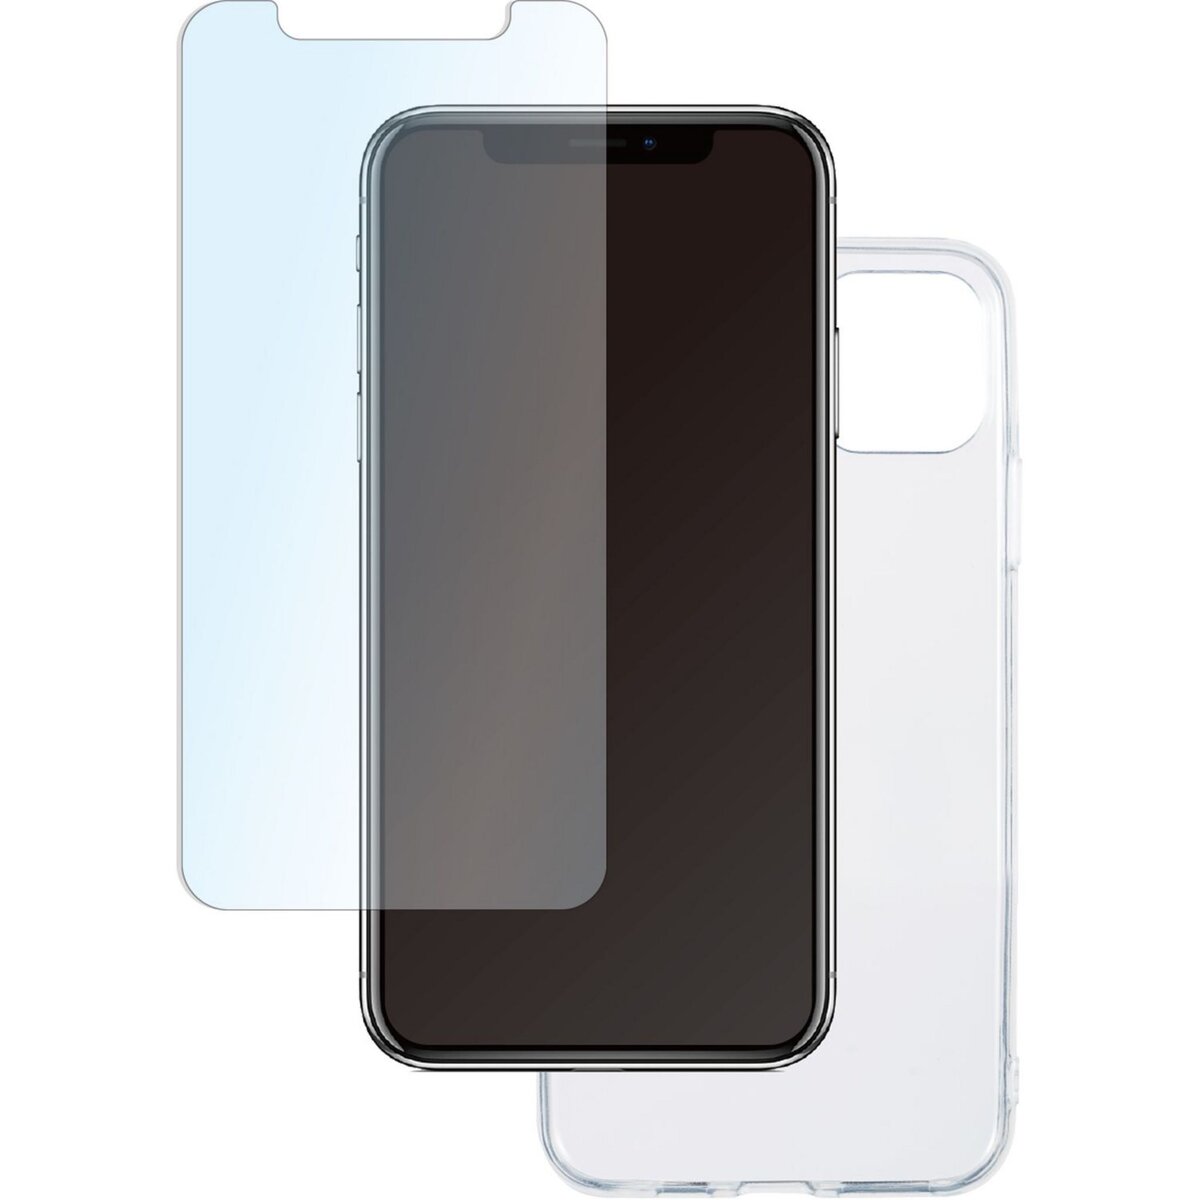 QILIVE Lot coque + protection d'écran pour iPhone 11 PRO MAX